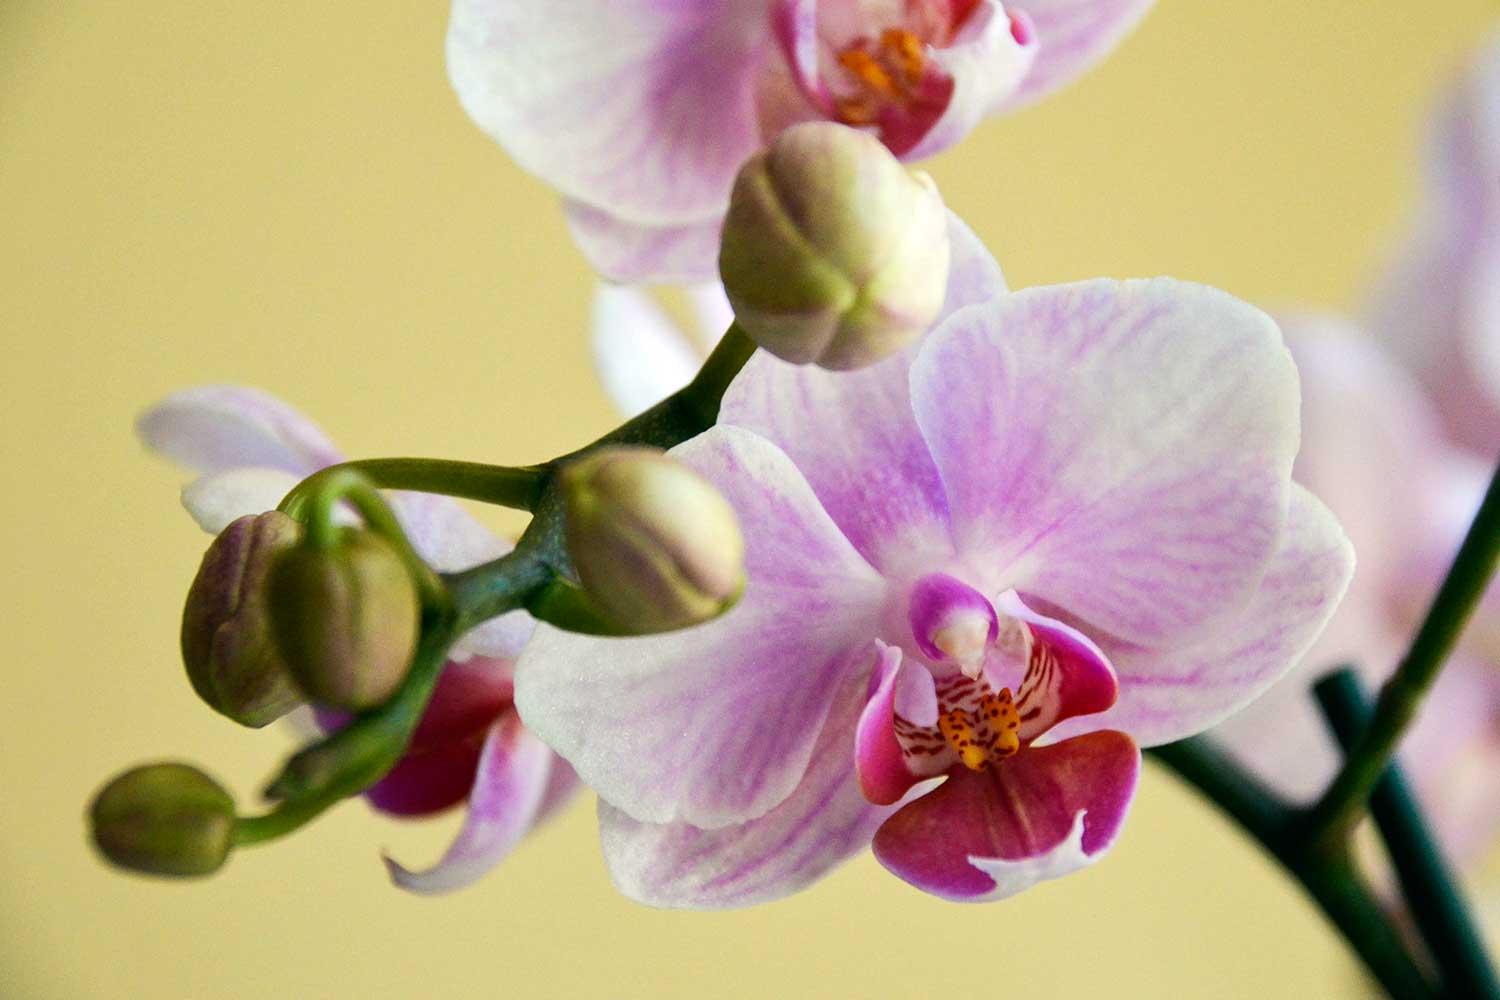 Orquídeas: aprenda sobre as flores que deixam qualquer ambiente mais bonito  - Gastronomia Carioca